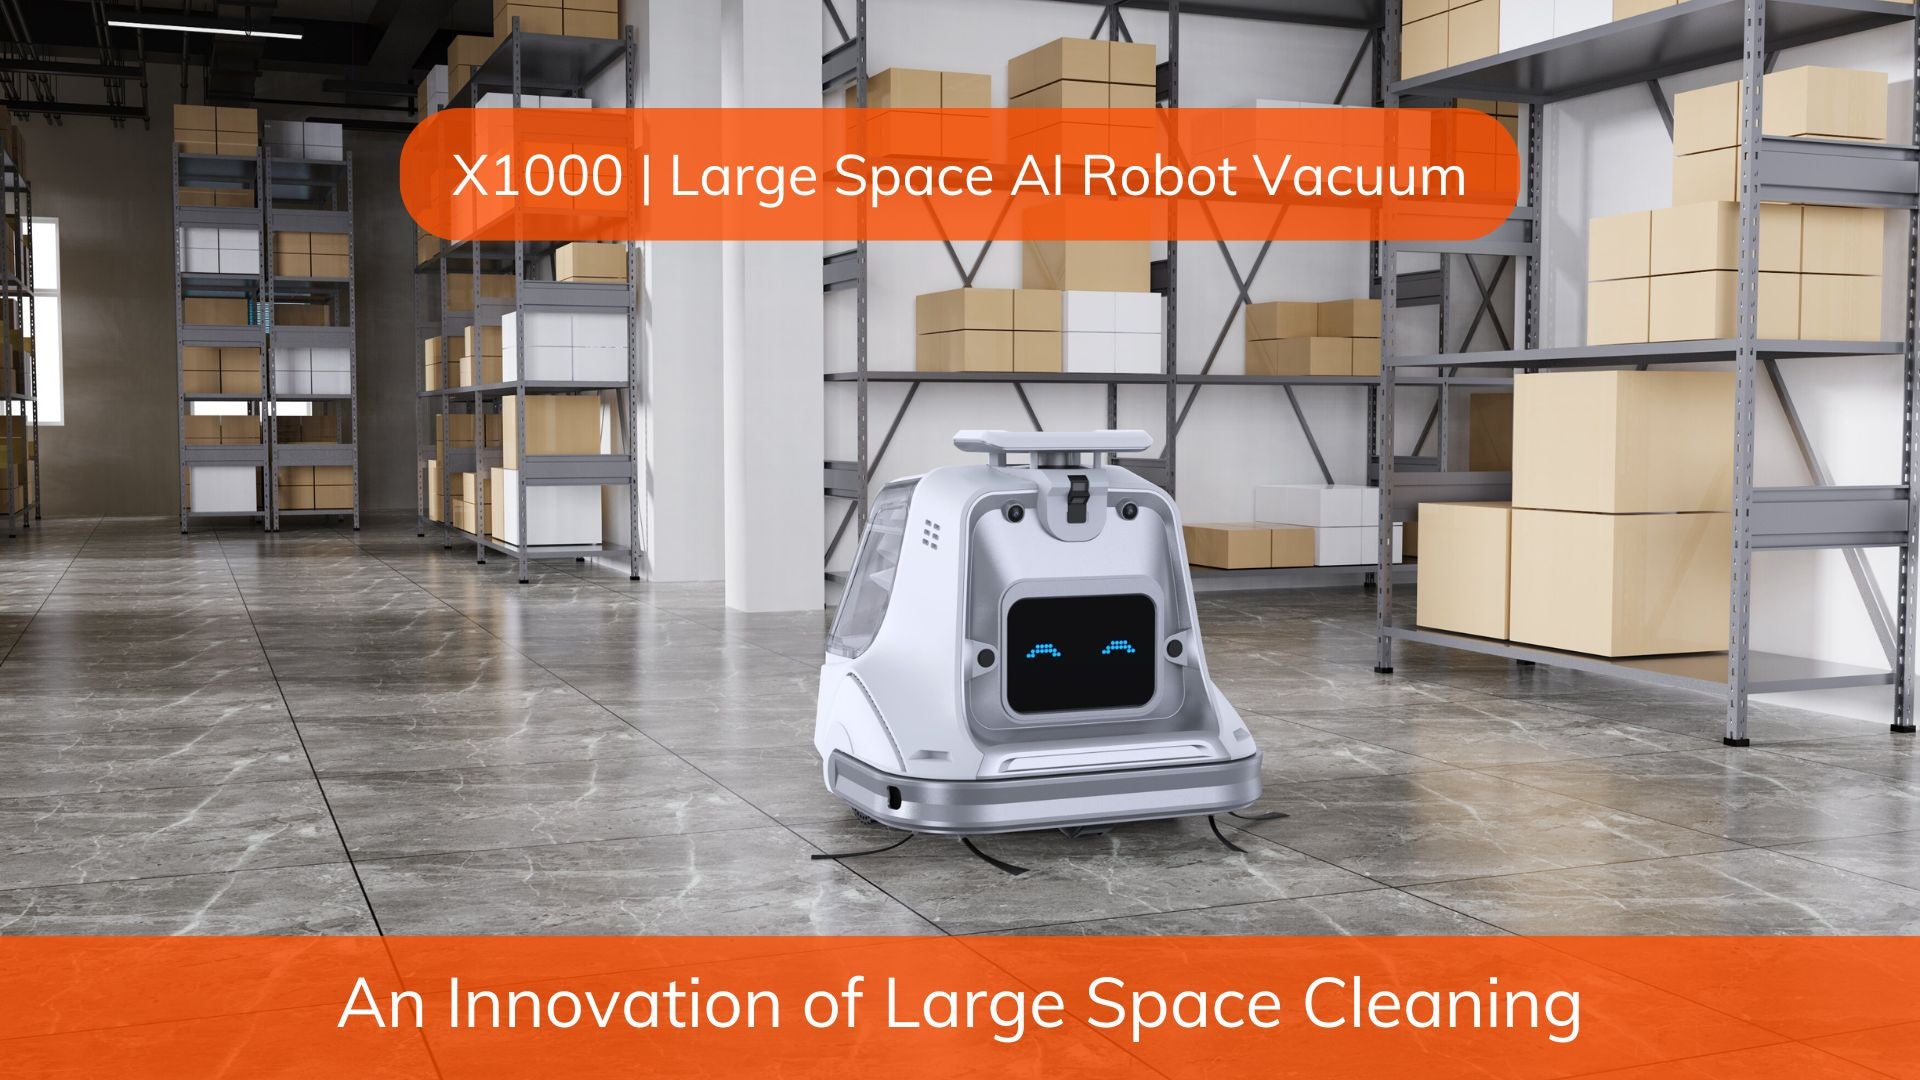 ILIFE X1000 Robotic Vacuum Cleaner